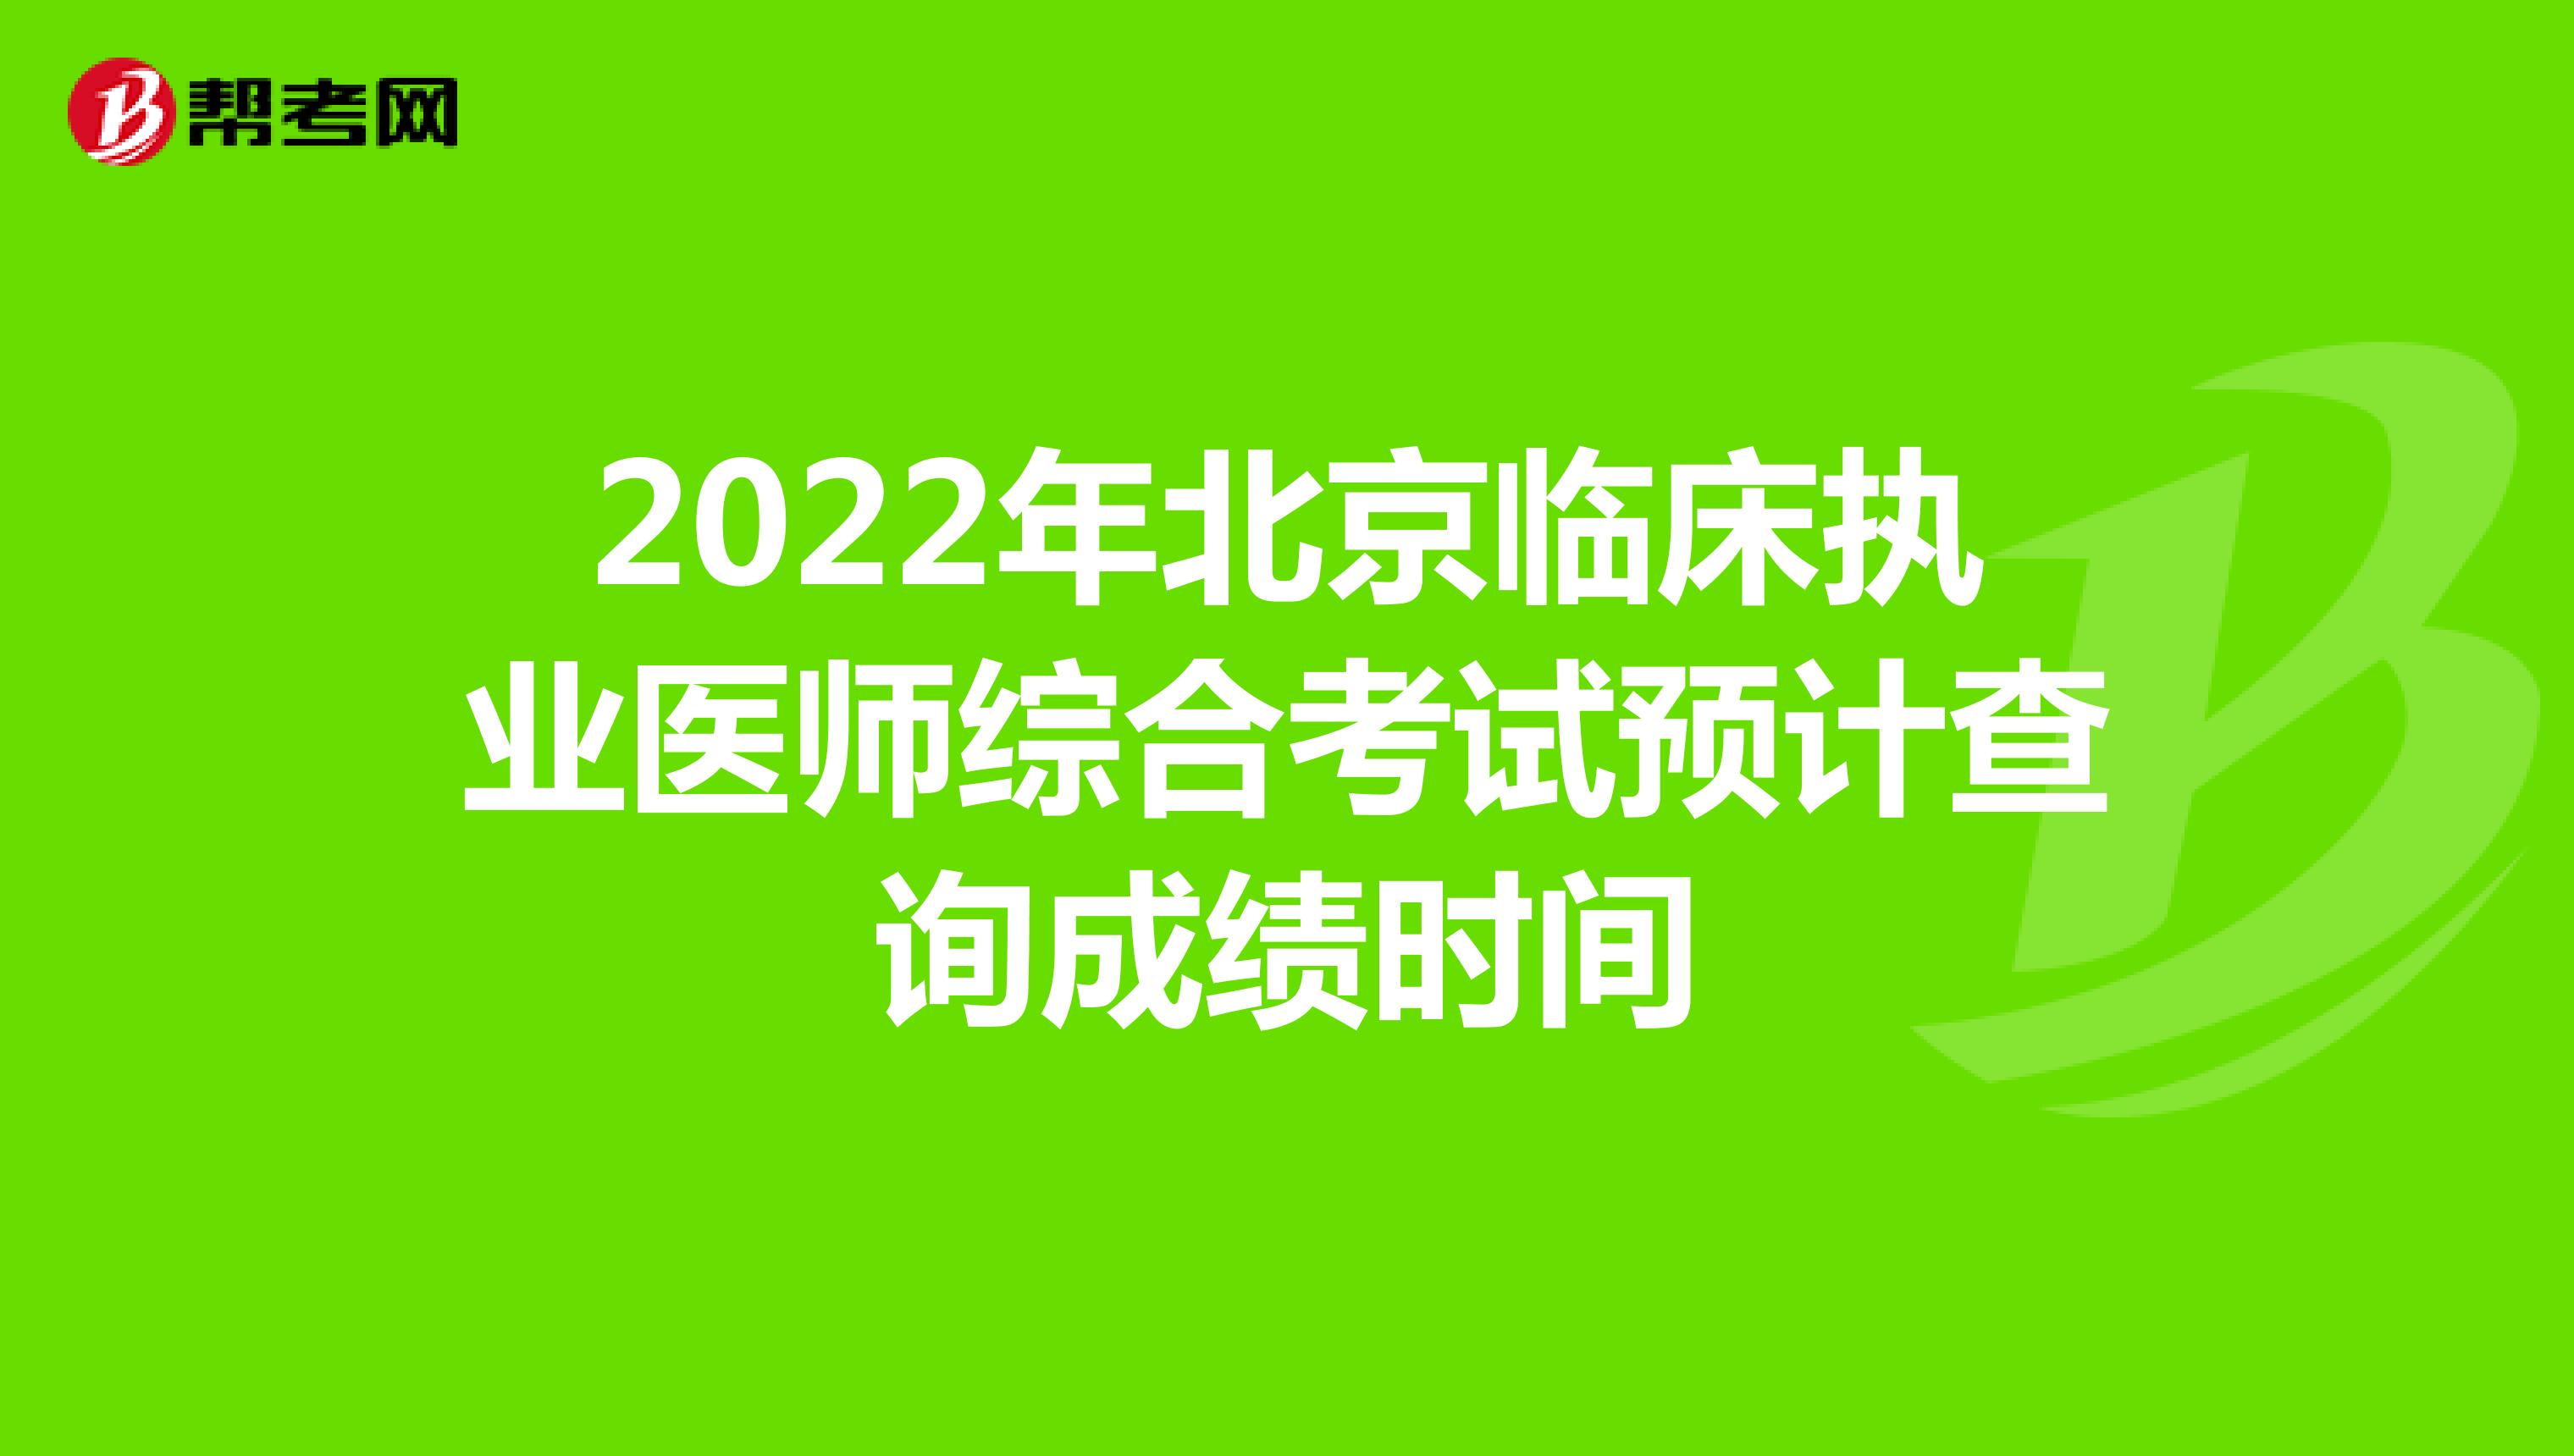 2022年北京临床执业医师综合考试预计查询成绩时间